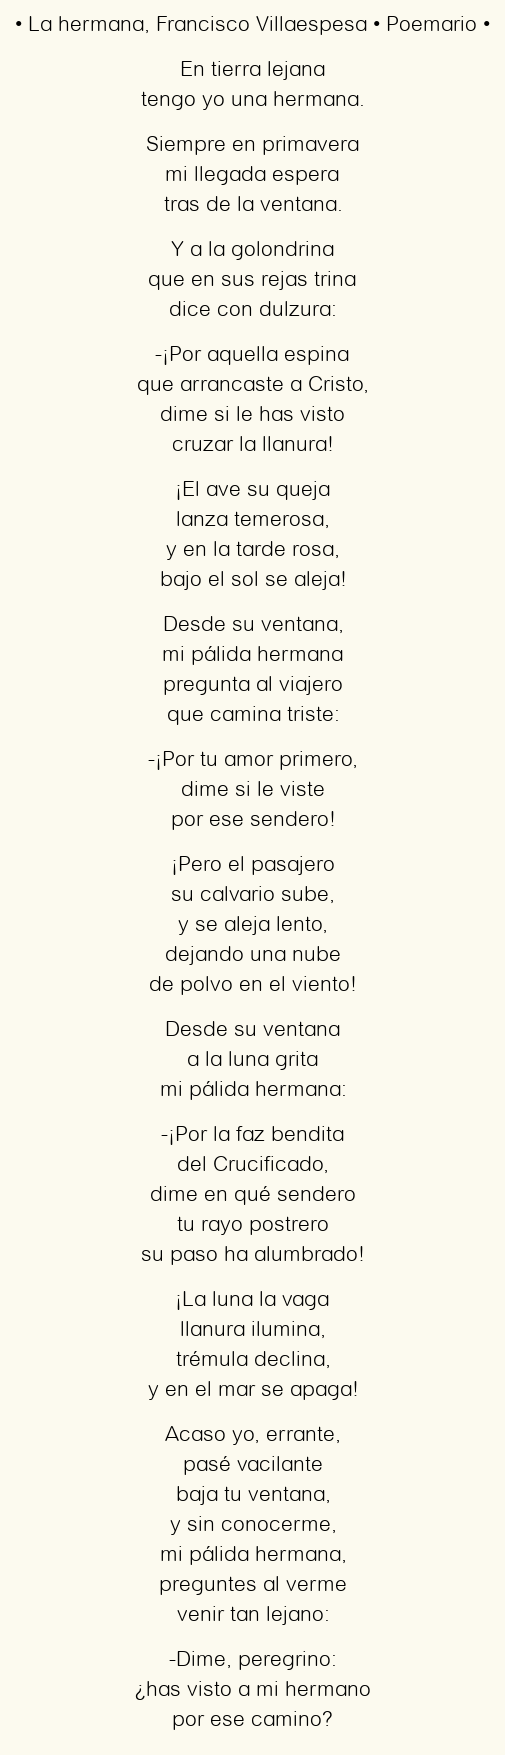 Imagen con el poema La hermana, por Francisco Villaespesa